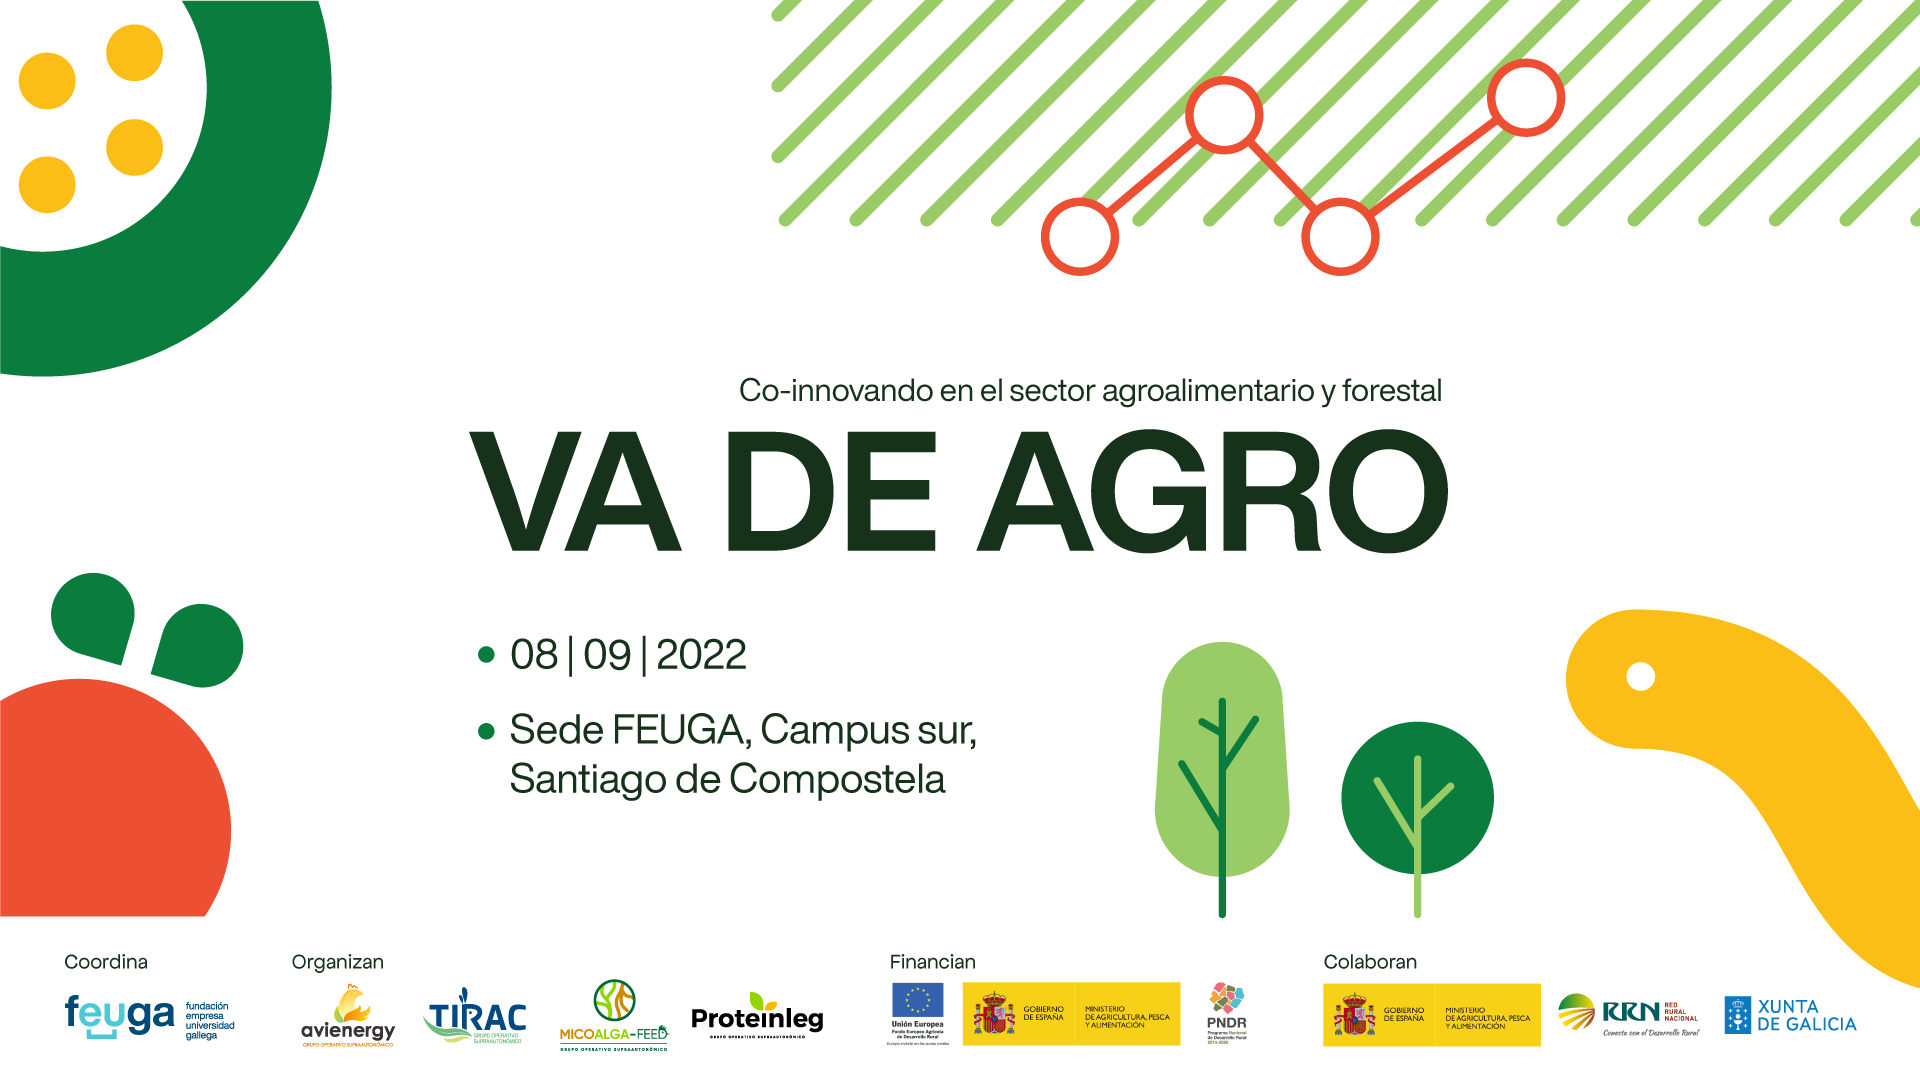 AVIENERGY organiza Va de Agro, el gran evento de la co-innovación en el sector agroalimentario y forestal